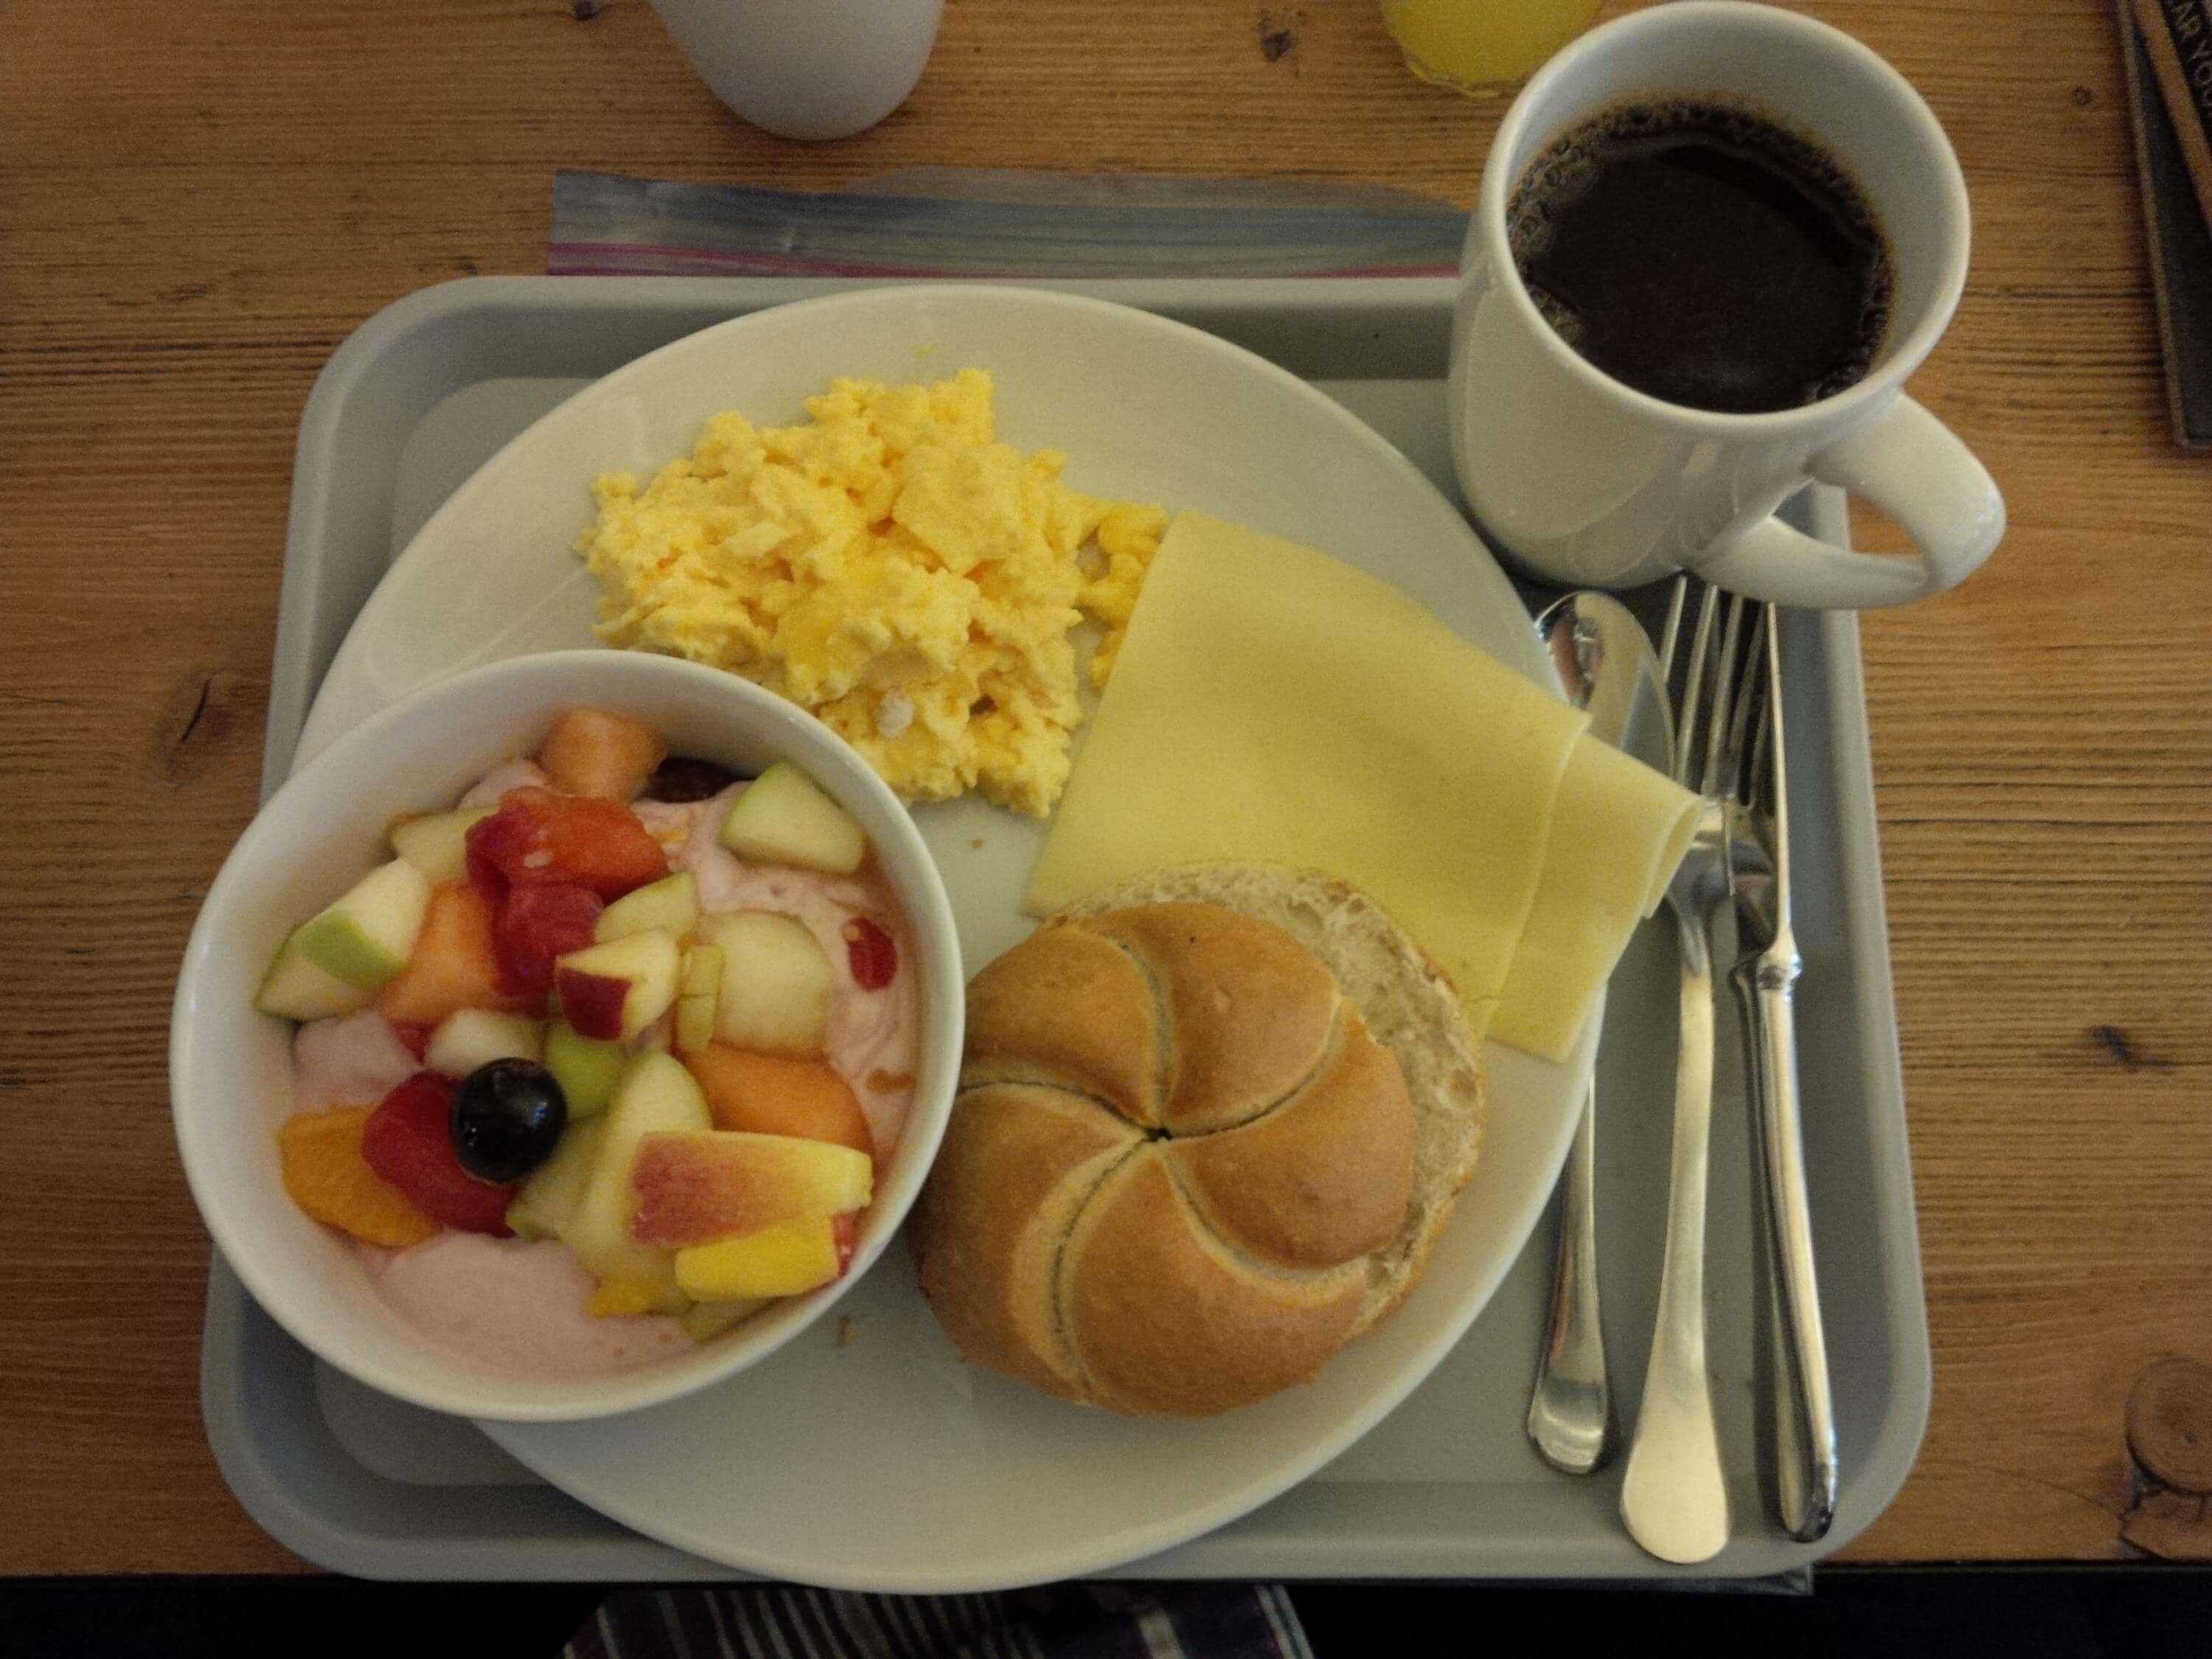 Hostel breakfast